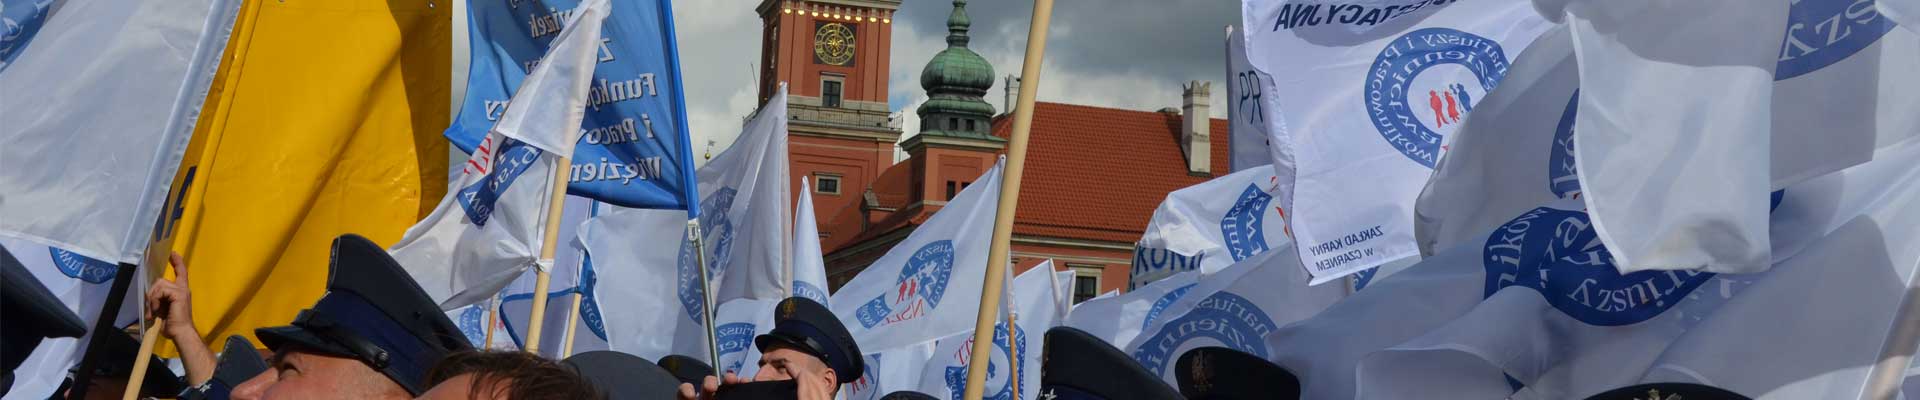 Uchwały ZO popierające działania ZO NSZZF i PW w Poznaniu – Akcja Protestacyjna